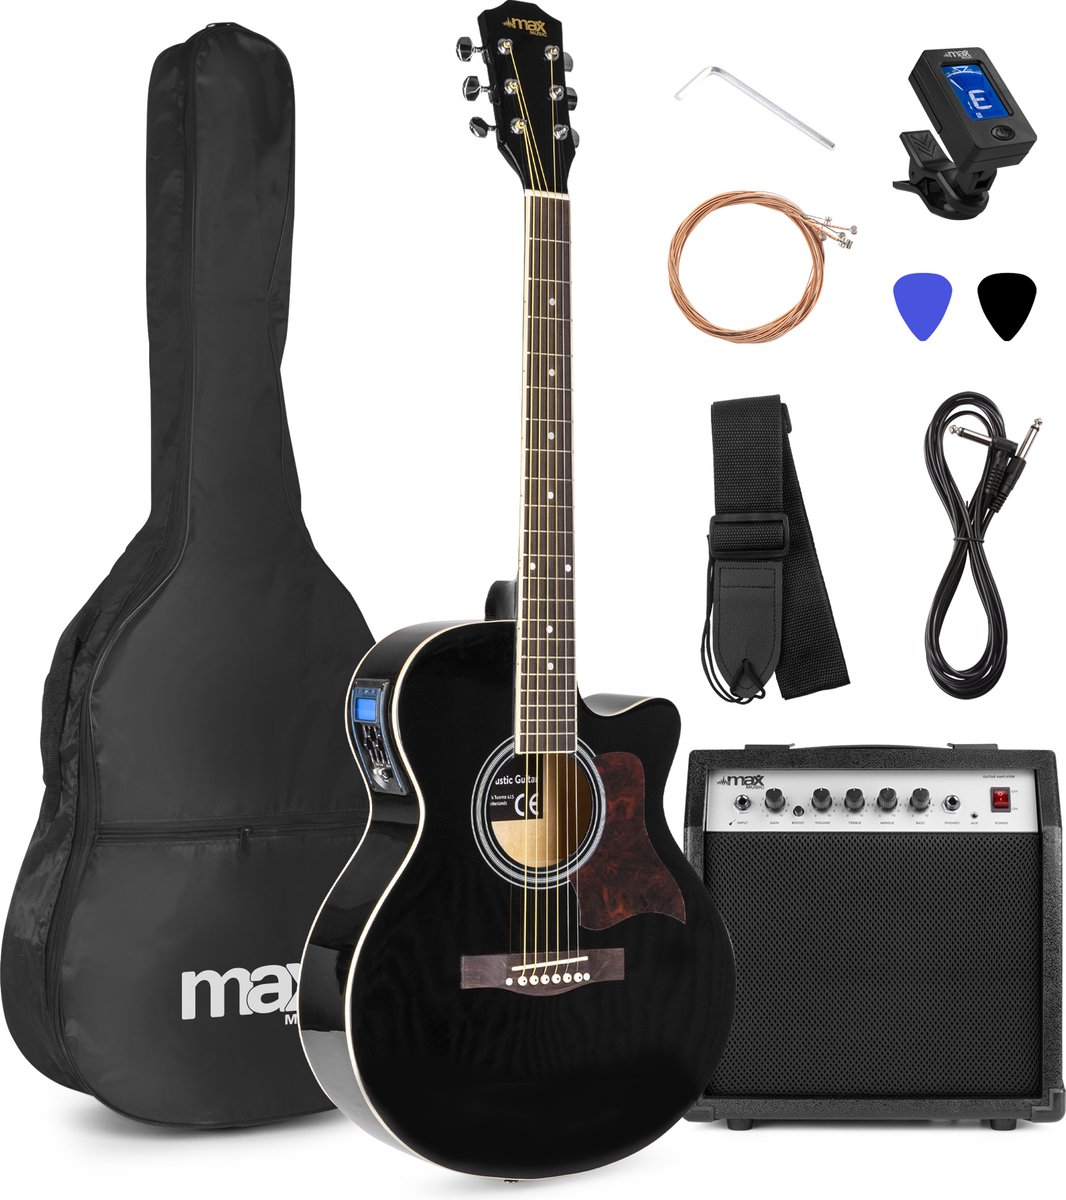 Elektrisch akoestische gitaar - MAX ShowKit gitaarset met 40W gitaar versterker, gitaar voetenbankje, gitaar stemapparaat, gitaartas en plectrum - Zwart